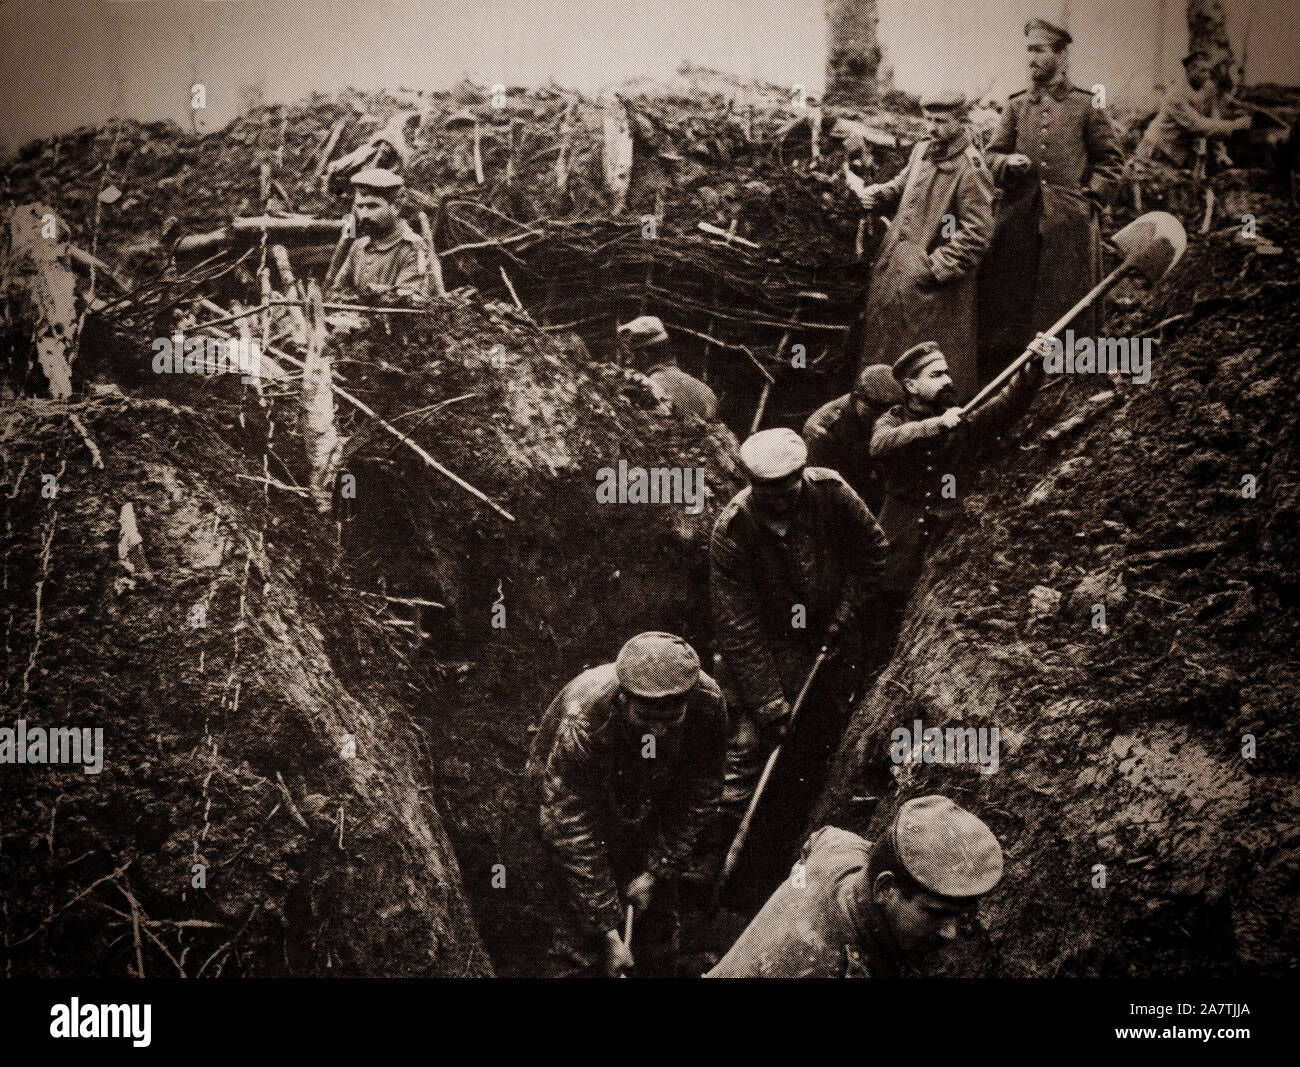 Soldados alemanes cavar trincheras cerca del Bosque de Argonne, una tira larga de Rocky Mountain y bosques silvestres en el noreste de Francia, aproximadamente a 200 km (120 millas) al este de París, Francia. Más tarde se convirtió en la ubicación del Mosa-Argonne ofensiva, una parte importante de la ofensiva aliada final de la I Guerra Mundial, que se extendía a lo largo de todo el frente occidental. Se luchó desde el 26 de septiembre de 1918 hasta el armisticio del 11 de noviembre de 1918, un total de 47 días. Foto de stock